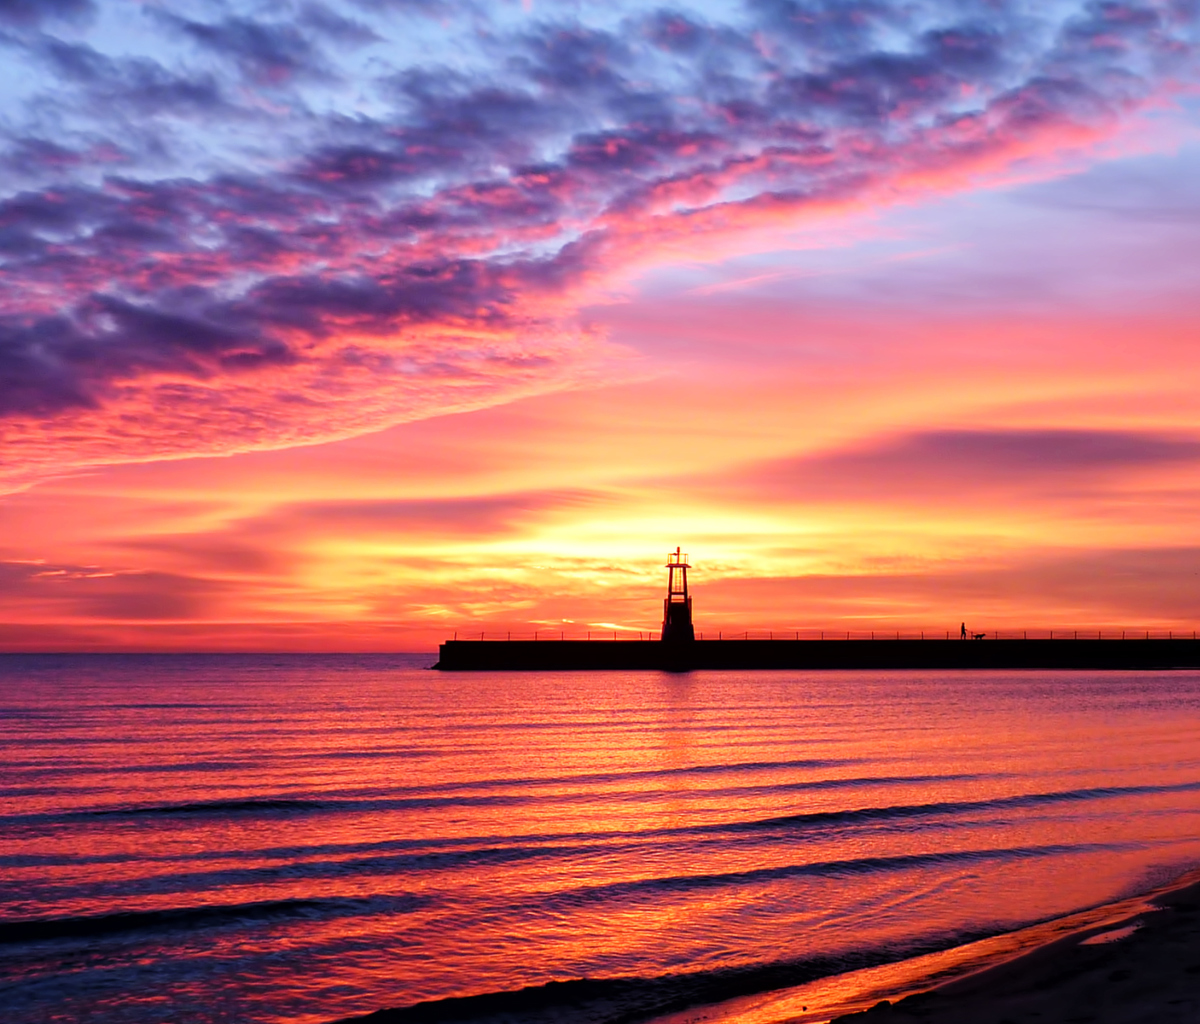 Обои Lighthouse And Red Sunset Beach 1200x1024